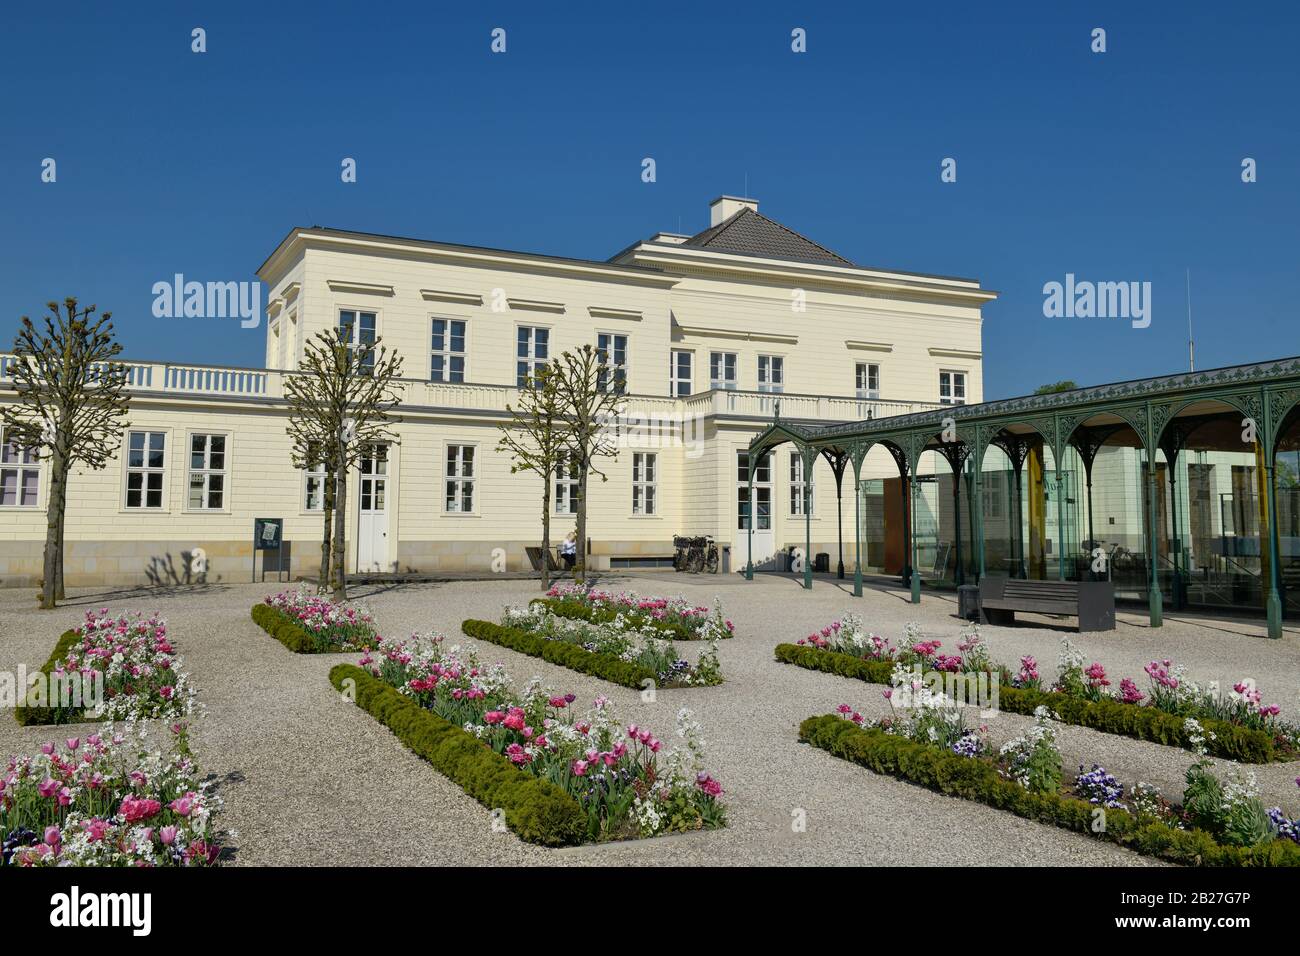 Tulpenbeete, Schloß, Großer Garten, Herrenhäuser Gärten, Hanovre, Niedersachsen, Allemagne Banque D'Images